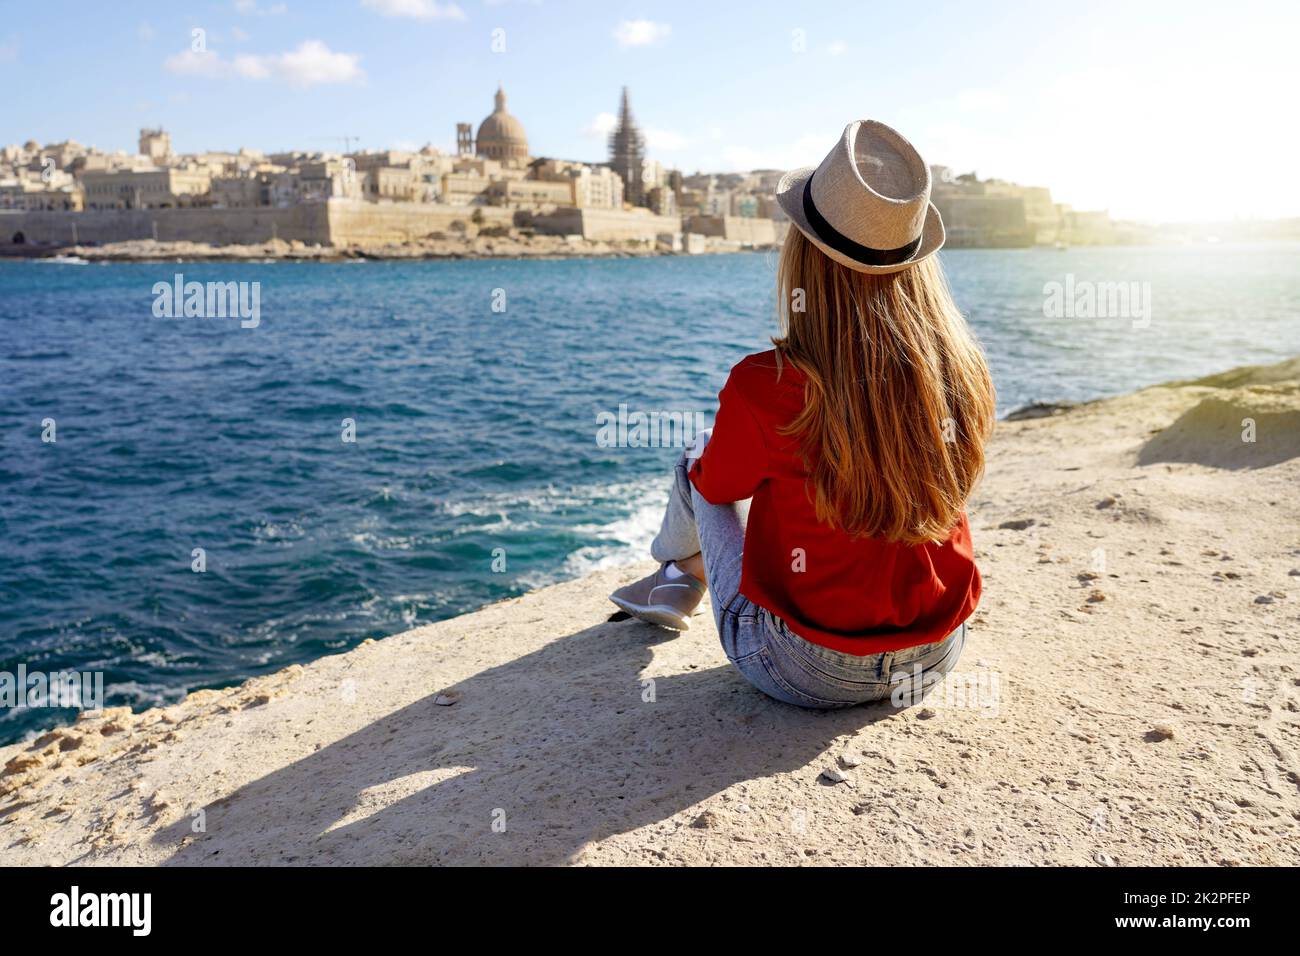 Fille s'assoit au bord de la mer en profitant du paysage étonnant de la Valette, Malte. Concept de voyage avec des personnes indépendantes faisant des activités de loisirs en plein air et de la vie de Wanderlust. Banque D'Images